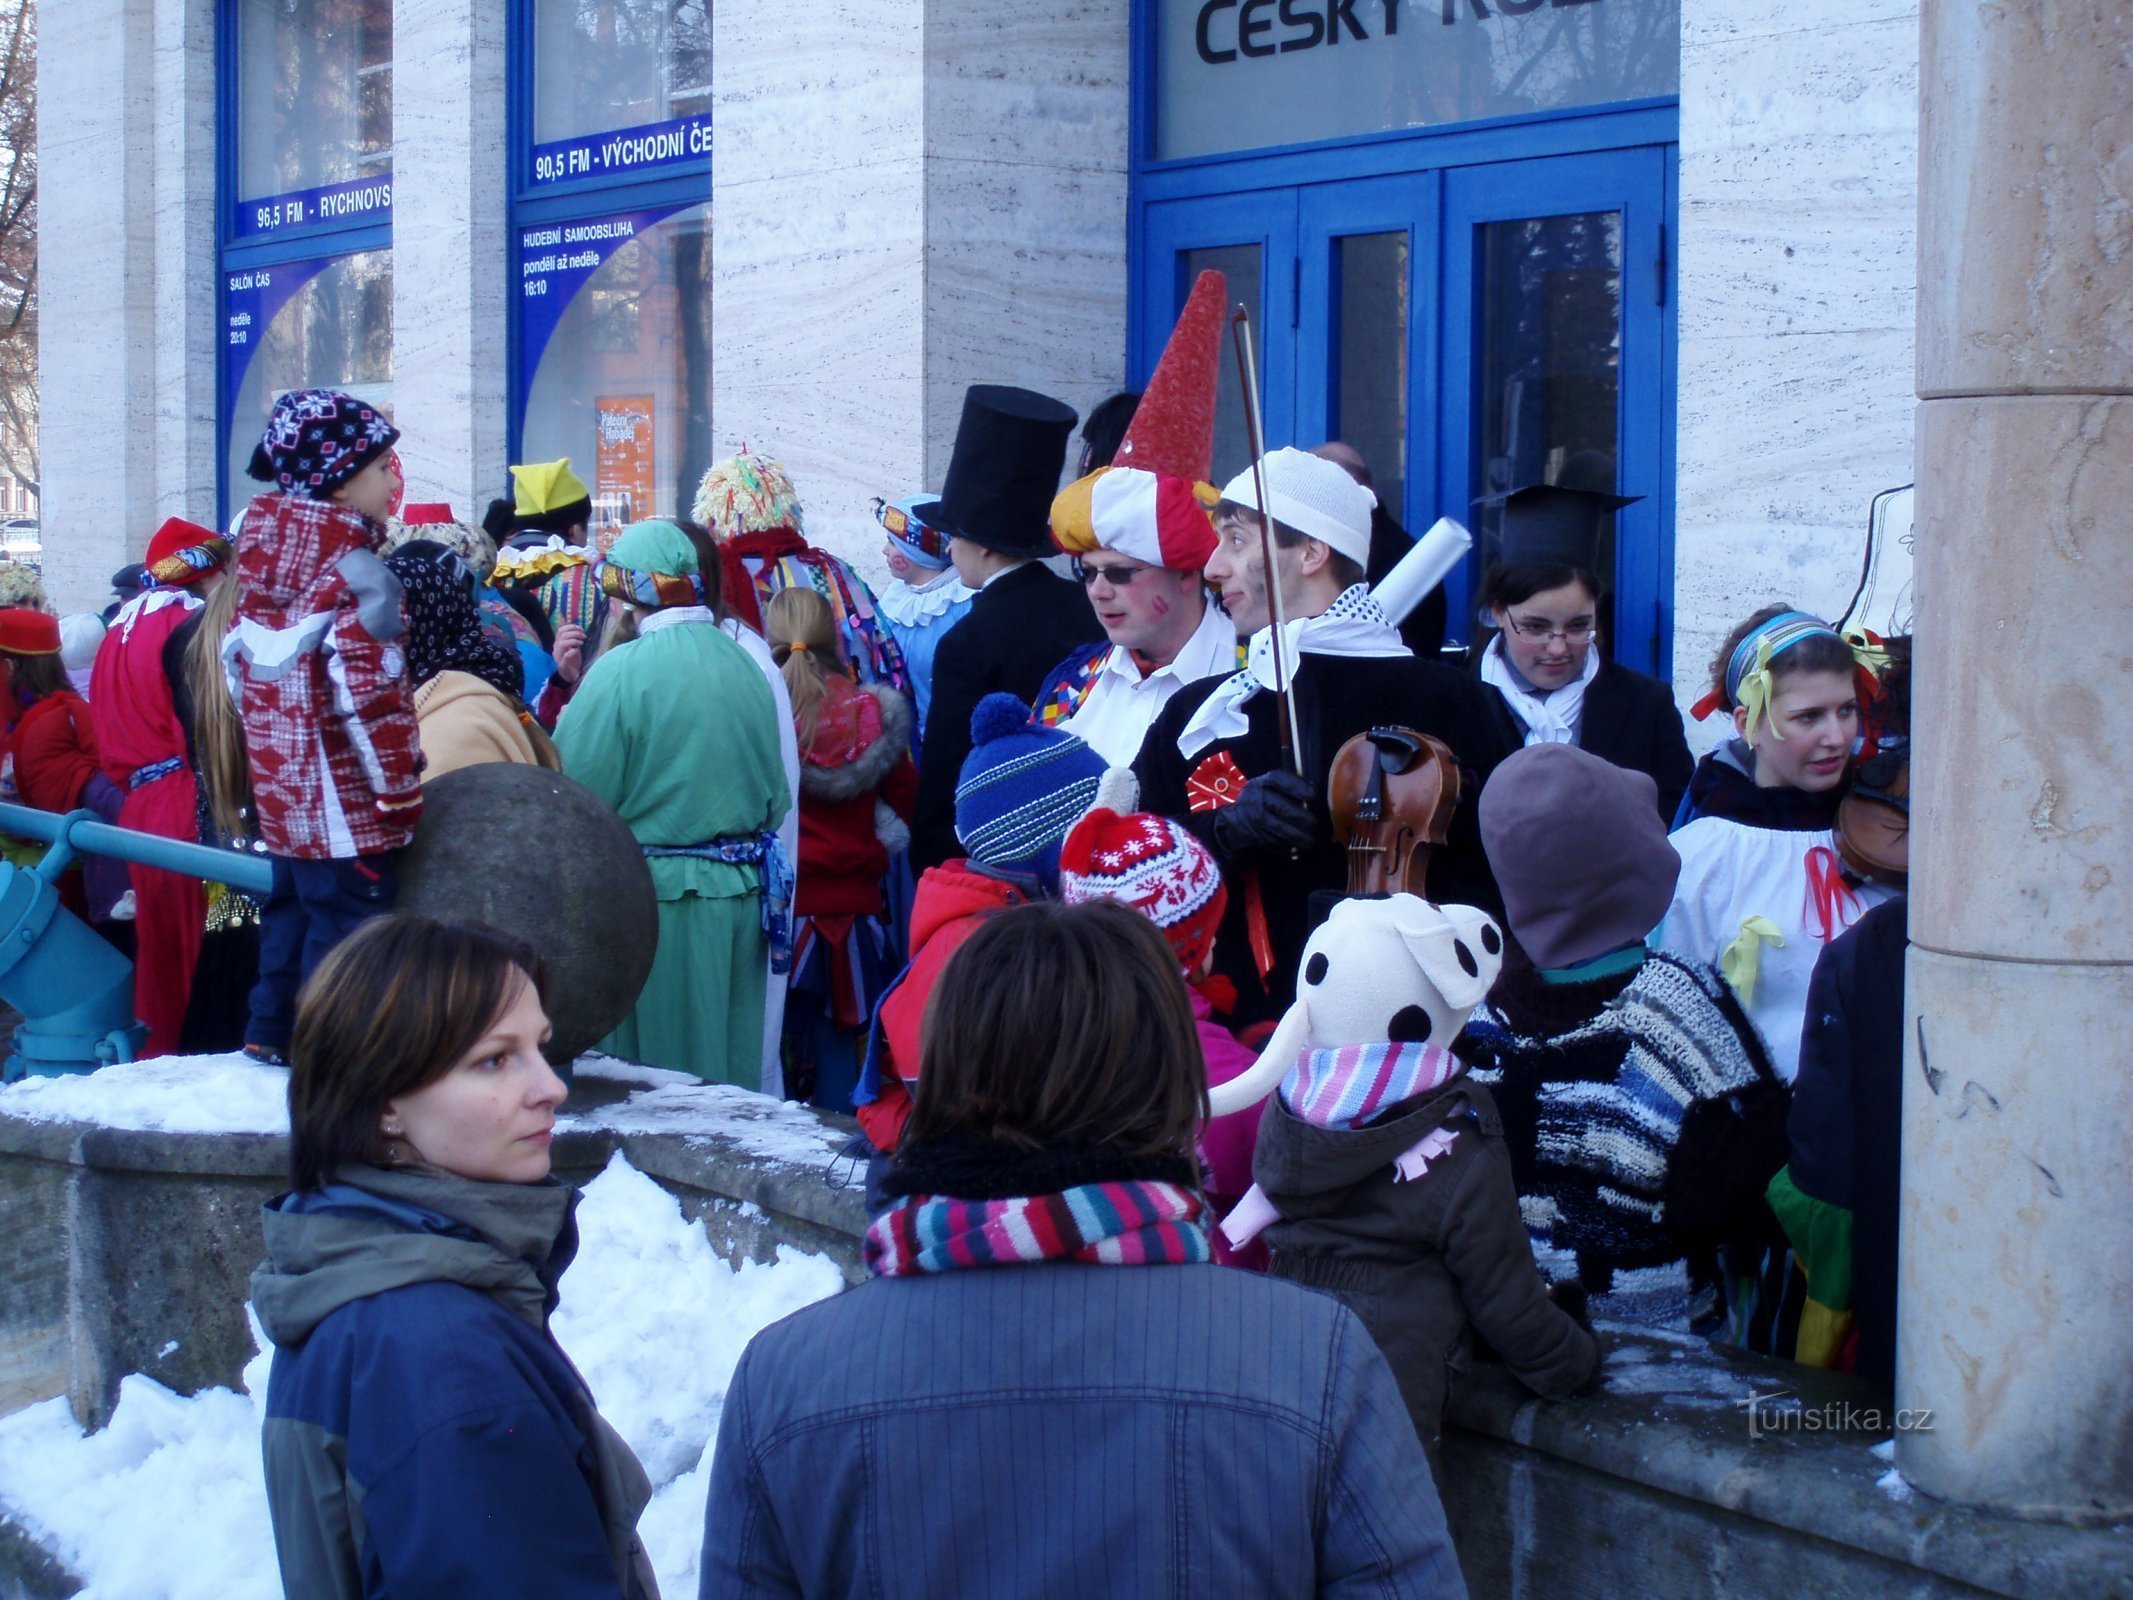 Staročeška karnevalska povorka (Hradec Králové, 16.2.2010. veljače XNUMX.)